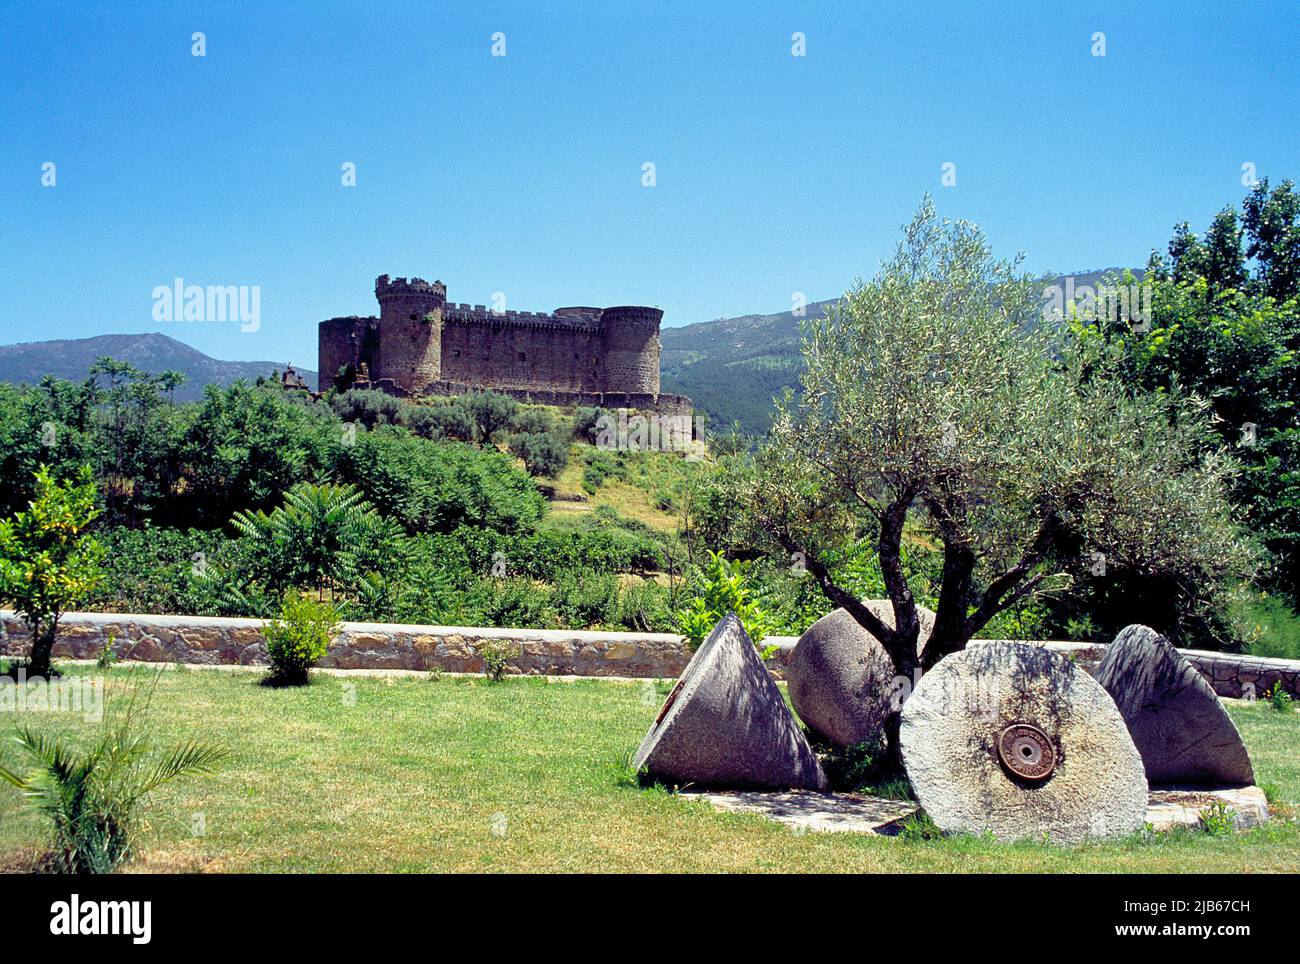 Medieval castle. Mombeltran, Avila province, Castilla Leon, Spain. Stock Photo